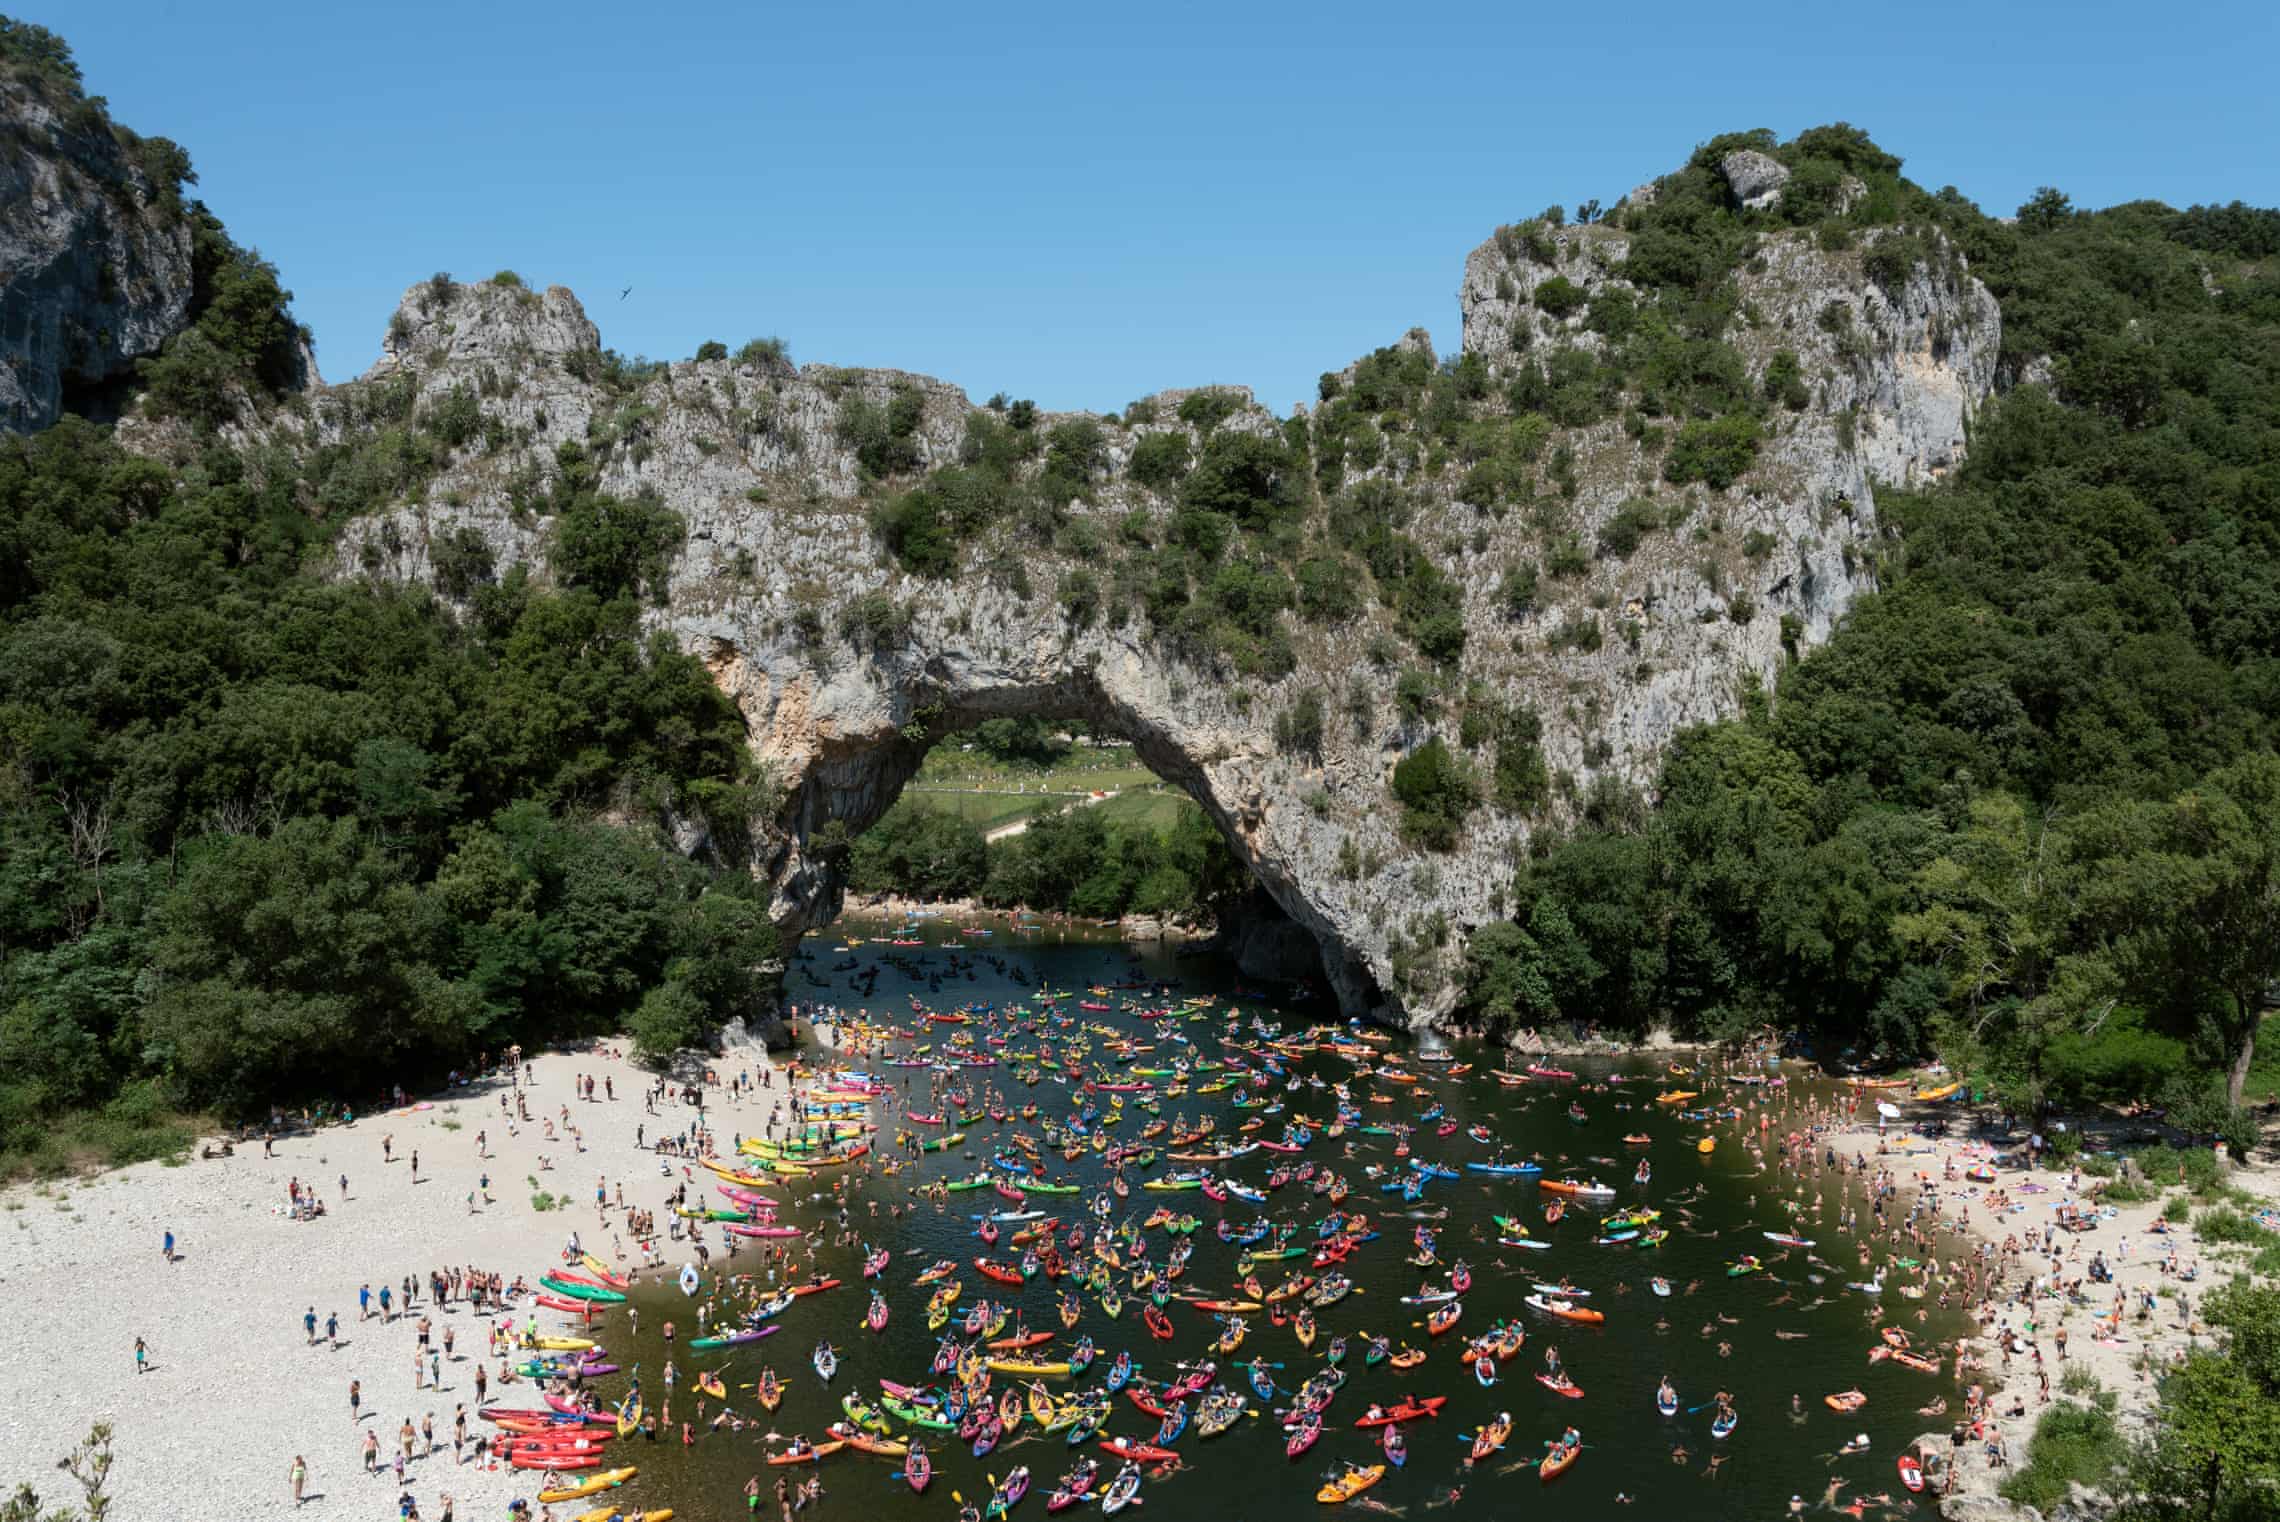 Paddle your own canoe … composite image of Pont d'Arc, Gorges de l'Ardèche, France, July 2021. Photograph: Natacha de Mahieu